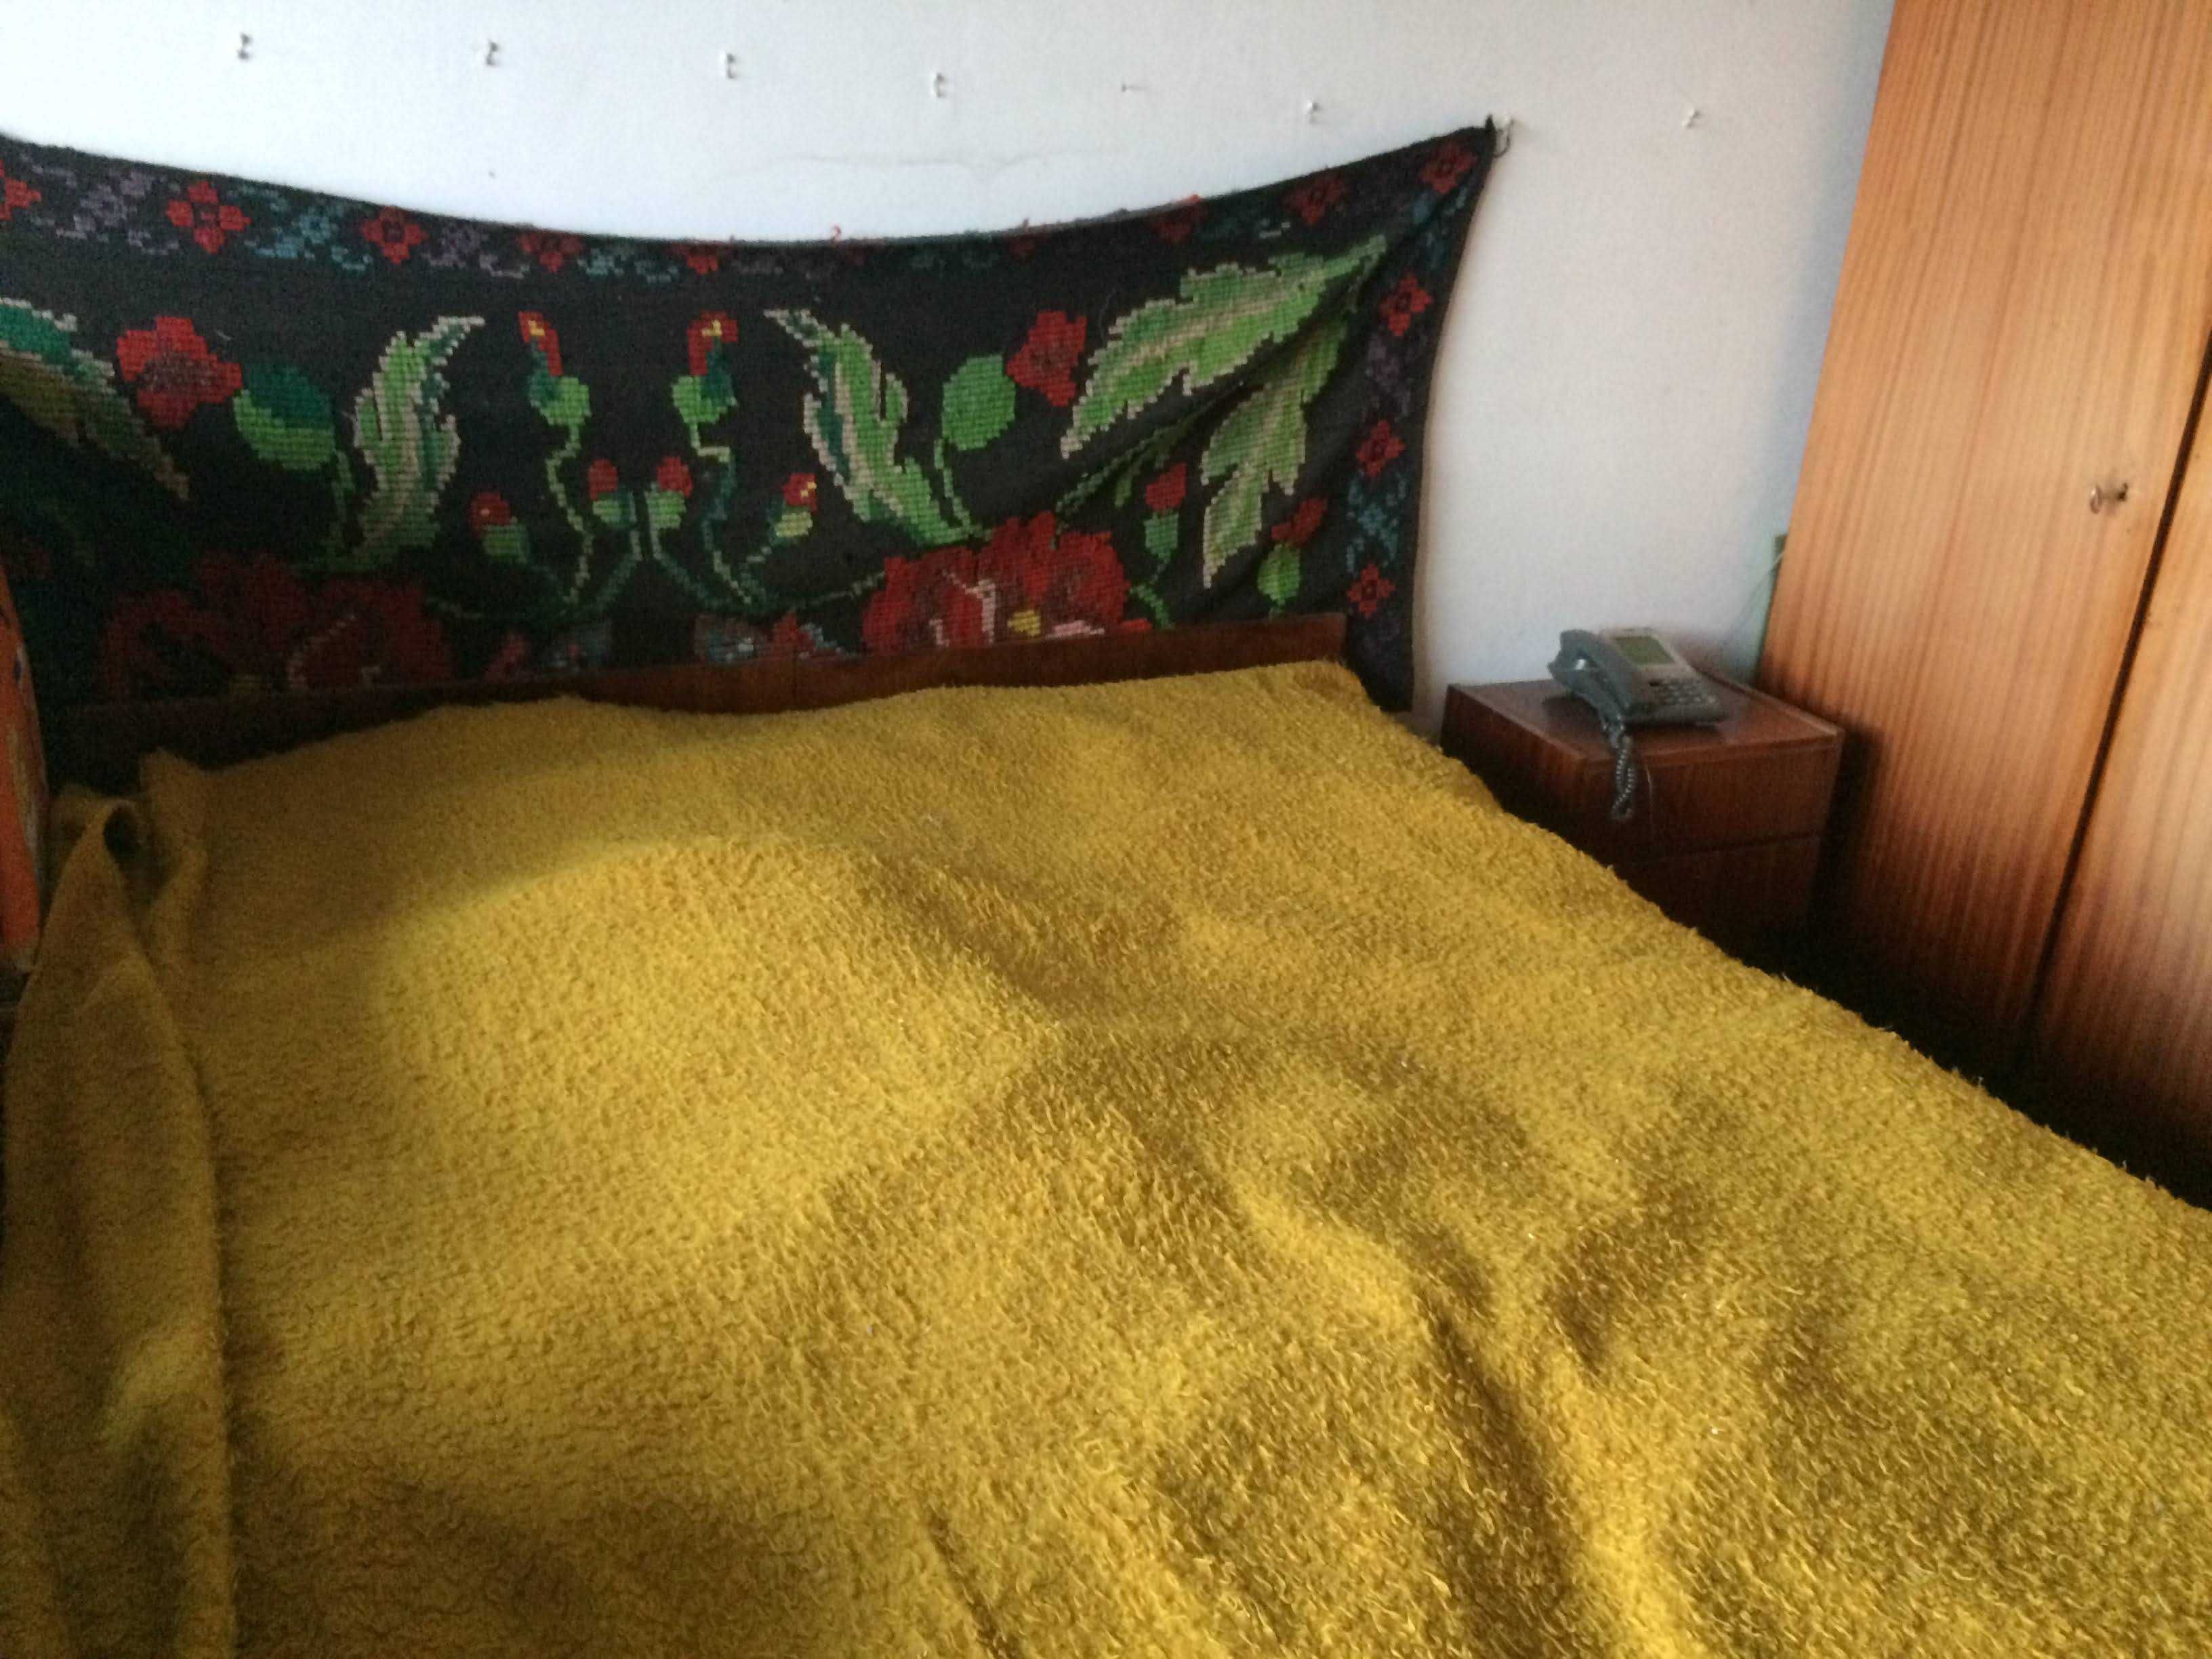 Dormitor complet vintage lucioasa